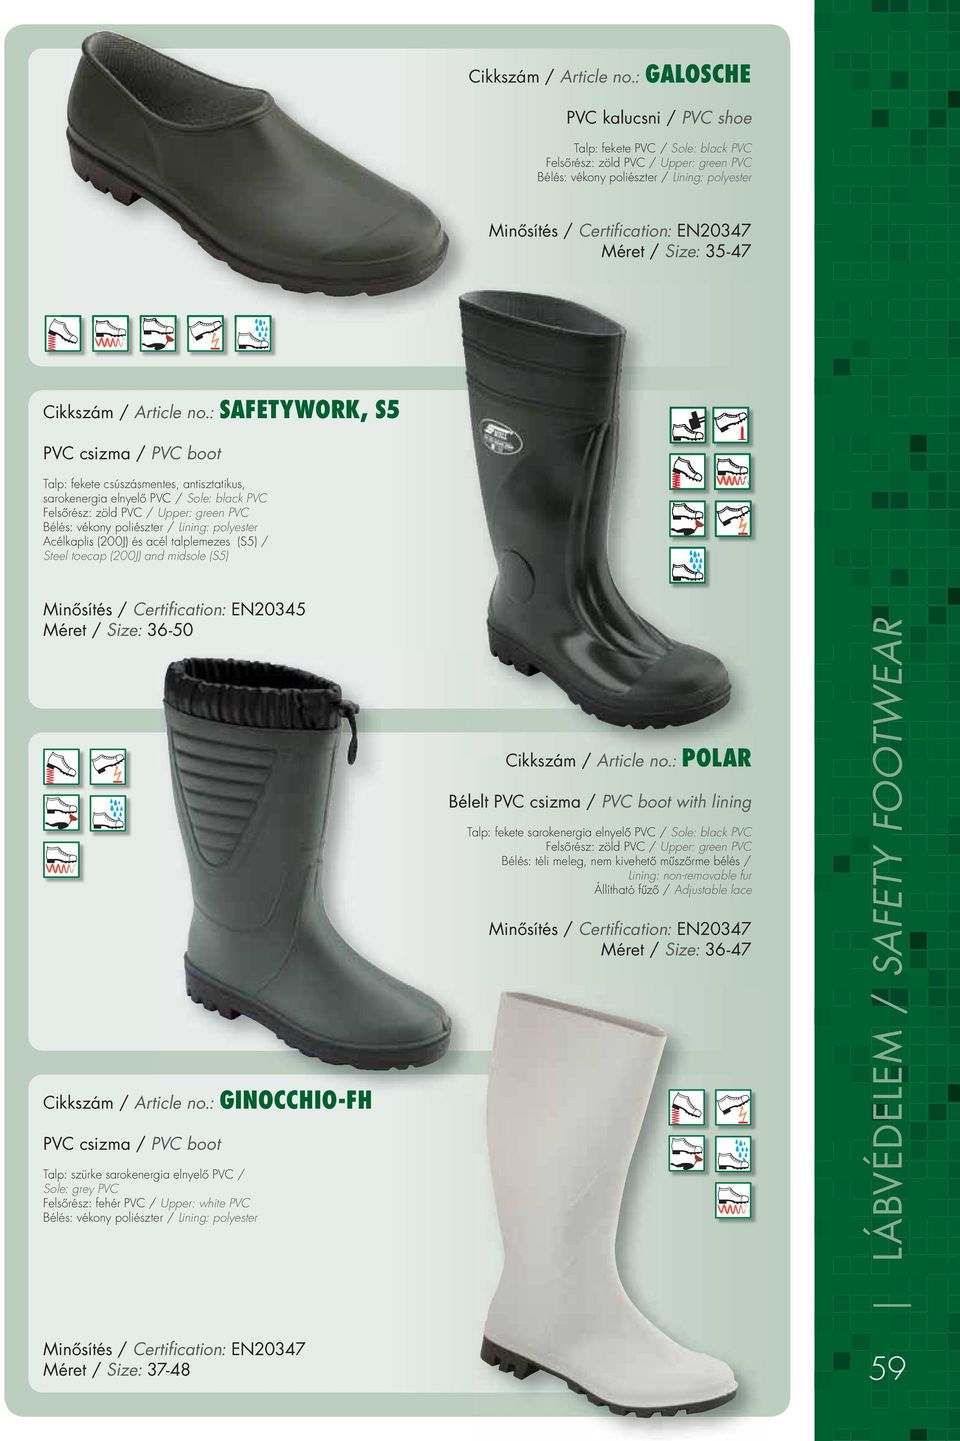 csizma / PVC boot Talp: fekete csúszásmentes, antisztatikus, sarokenergia elnyelô PVC / Sole: black PVC Felsôrész: zöld PVC / Upper: green PVC Bélés: vékony poliészter / Lining: polyester Acélkaplis